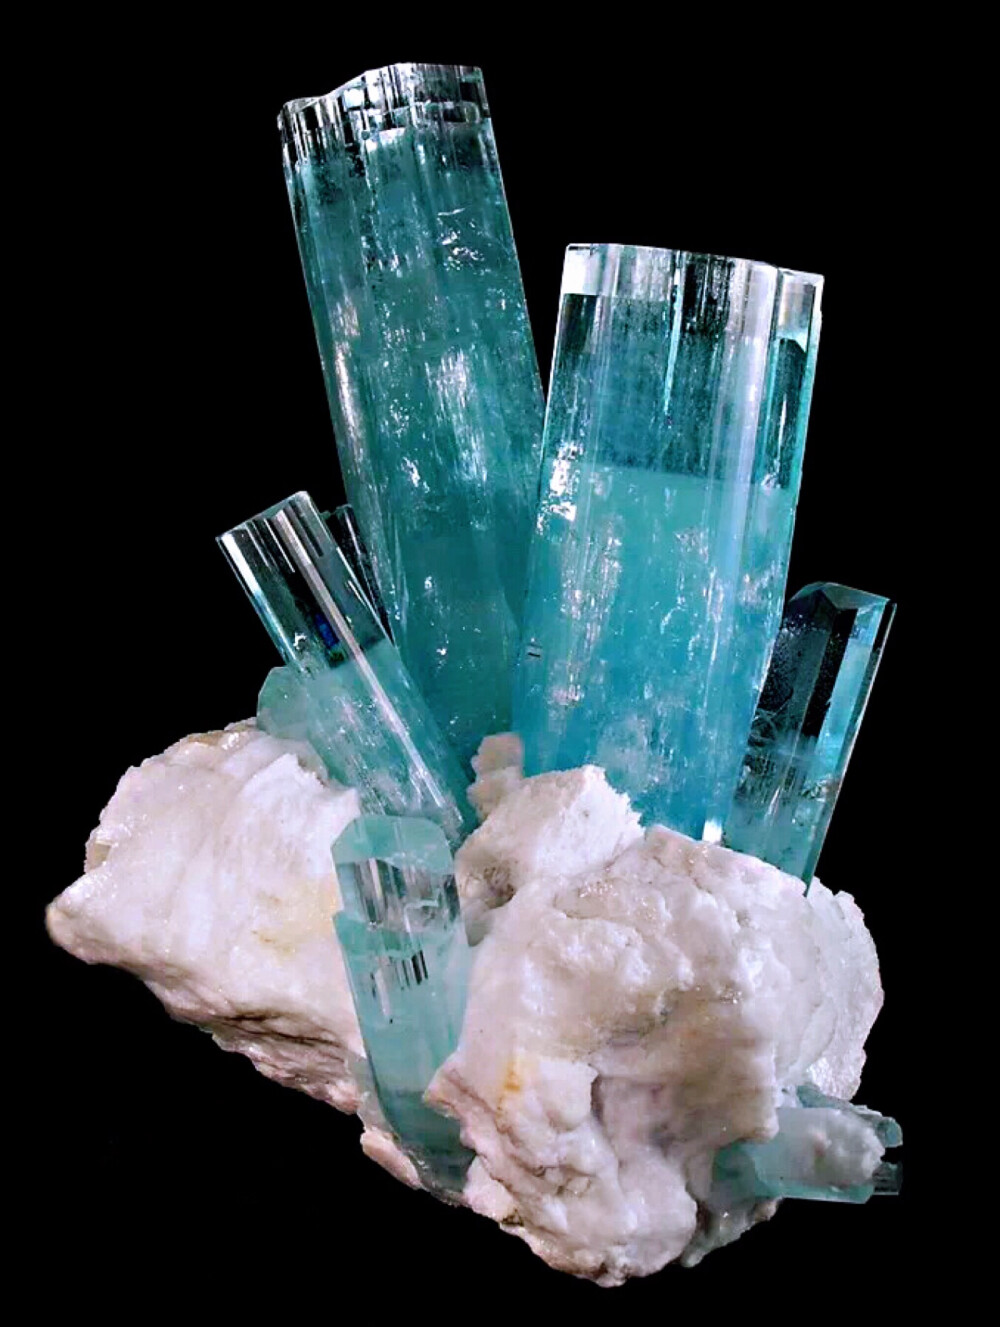 海蓝宝石是绿柱石家族中具有优雅气质的天空蓝色品种，拉丁语“Aqua”意为水，“Mare”意为海，海蓝宝石是欧美宝石市场热爱的品种，航海家用它祈祷海神保佑出行的安全。海蓝宝是含铁的绿柱石，颜色有蓝色、绿蓝色到蓝绿色。价值最高的为蓝色较深的品种，但是此品种天然产出较少。